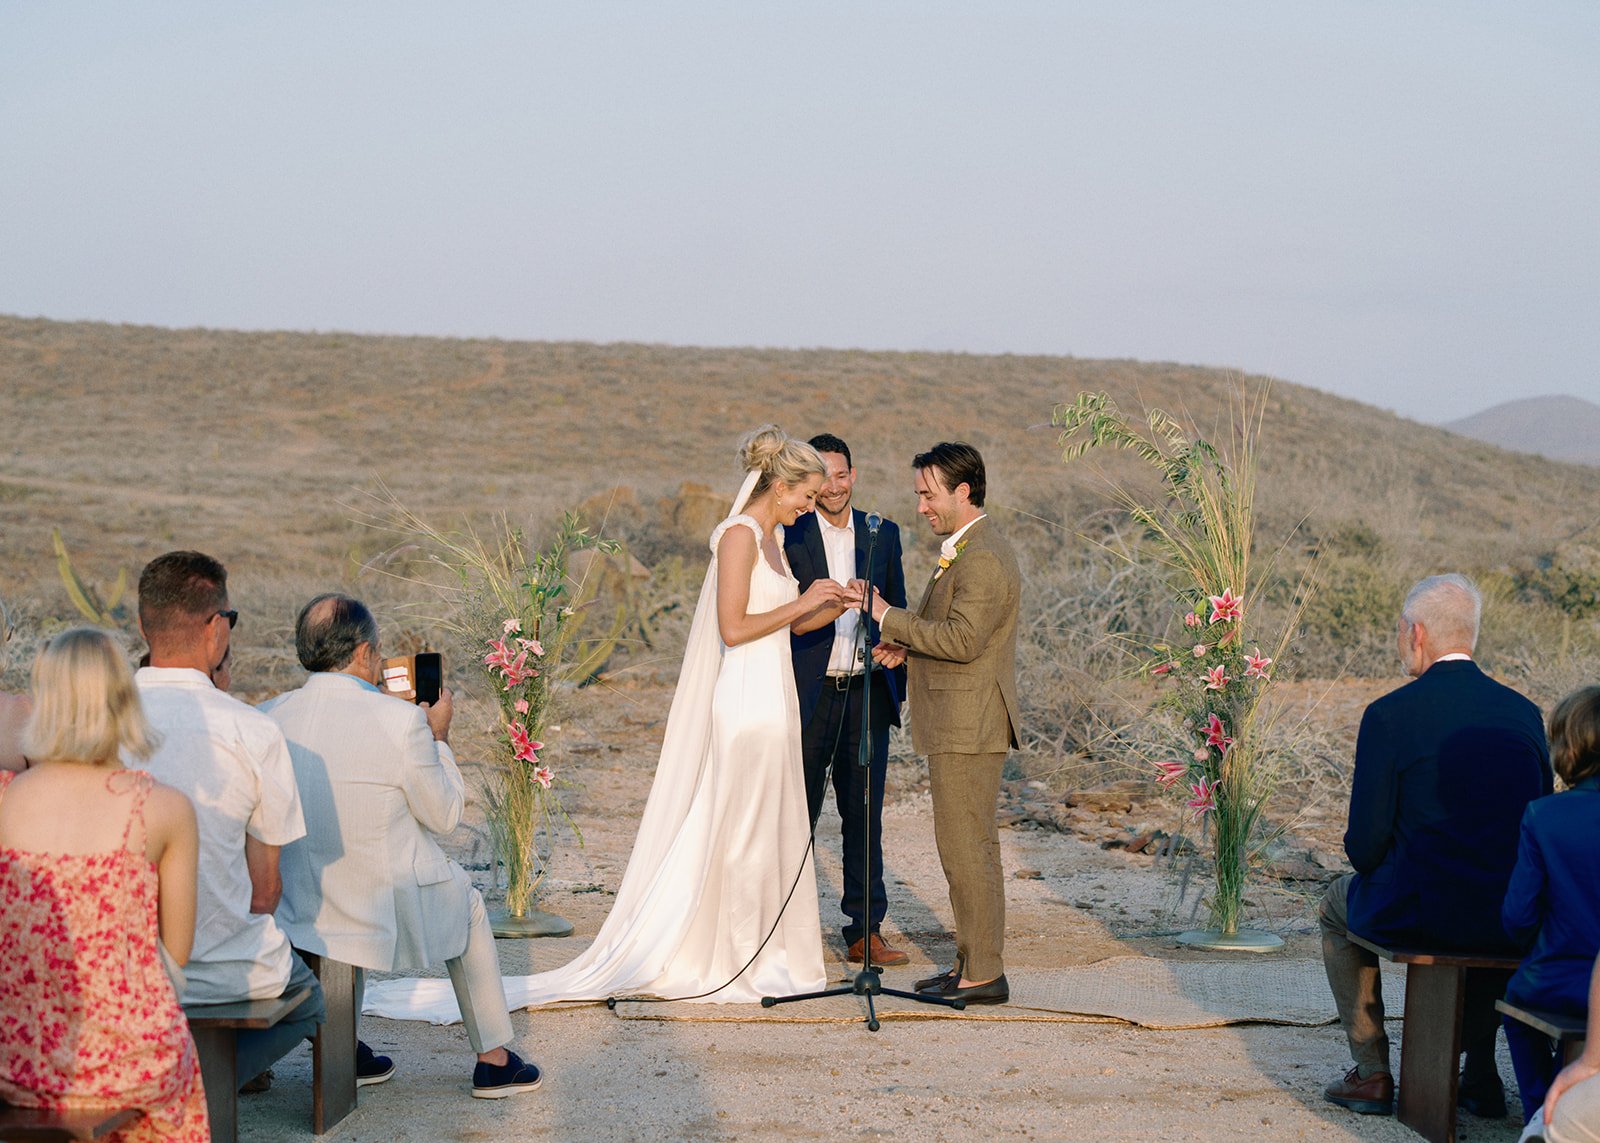 Best-Todos-Santos-Wedding-Photographer-Baja-El Mirador-La Bohemia-35mm-Film-Austin-Mexico-132.jpg